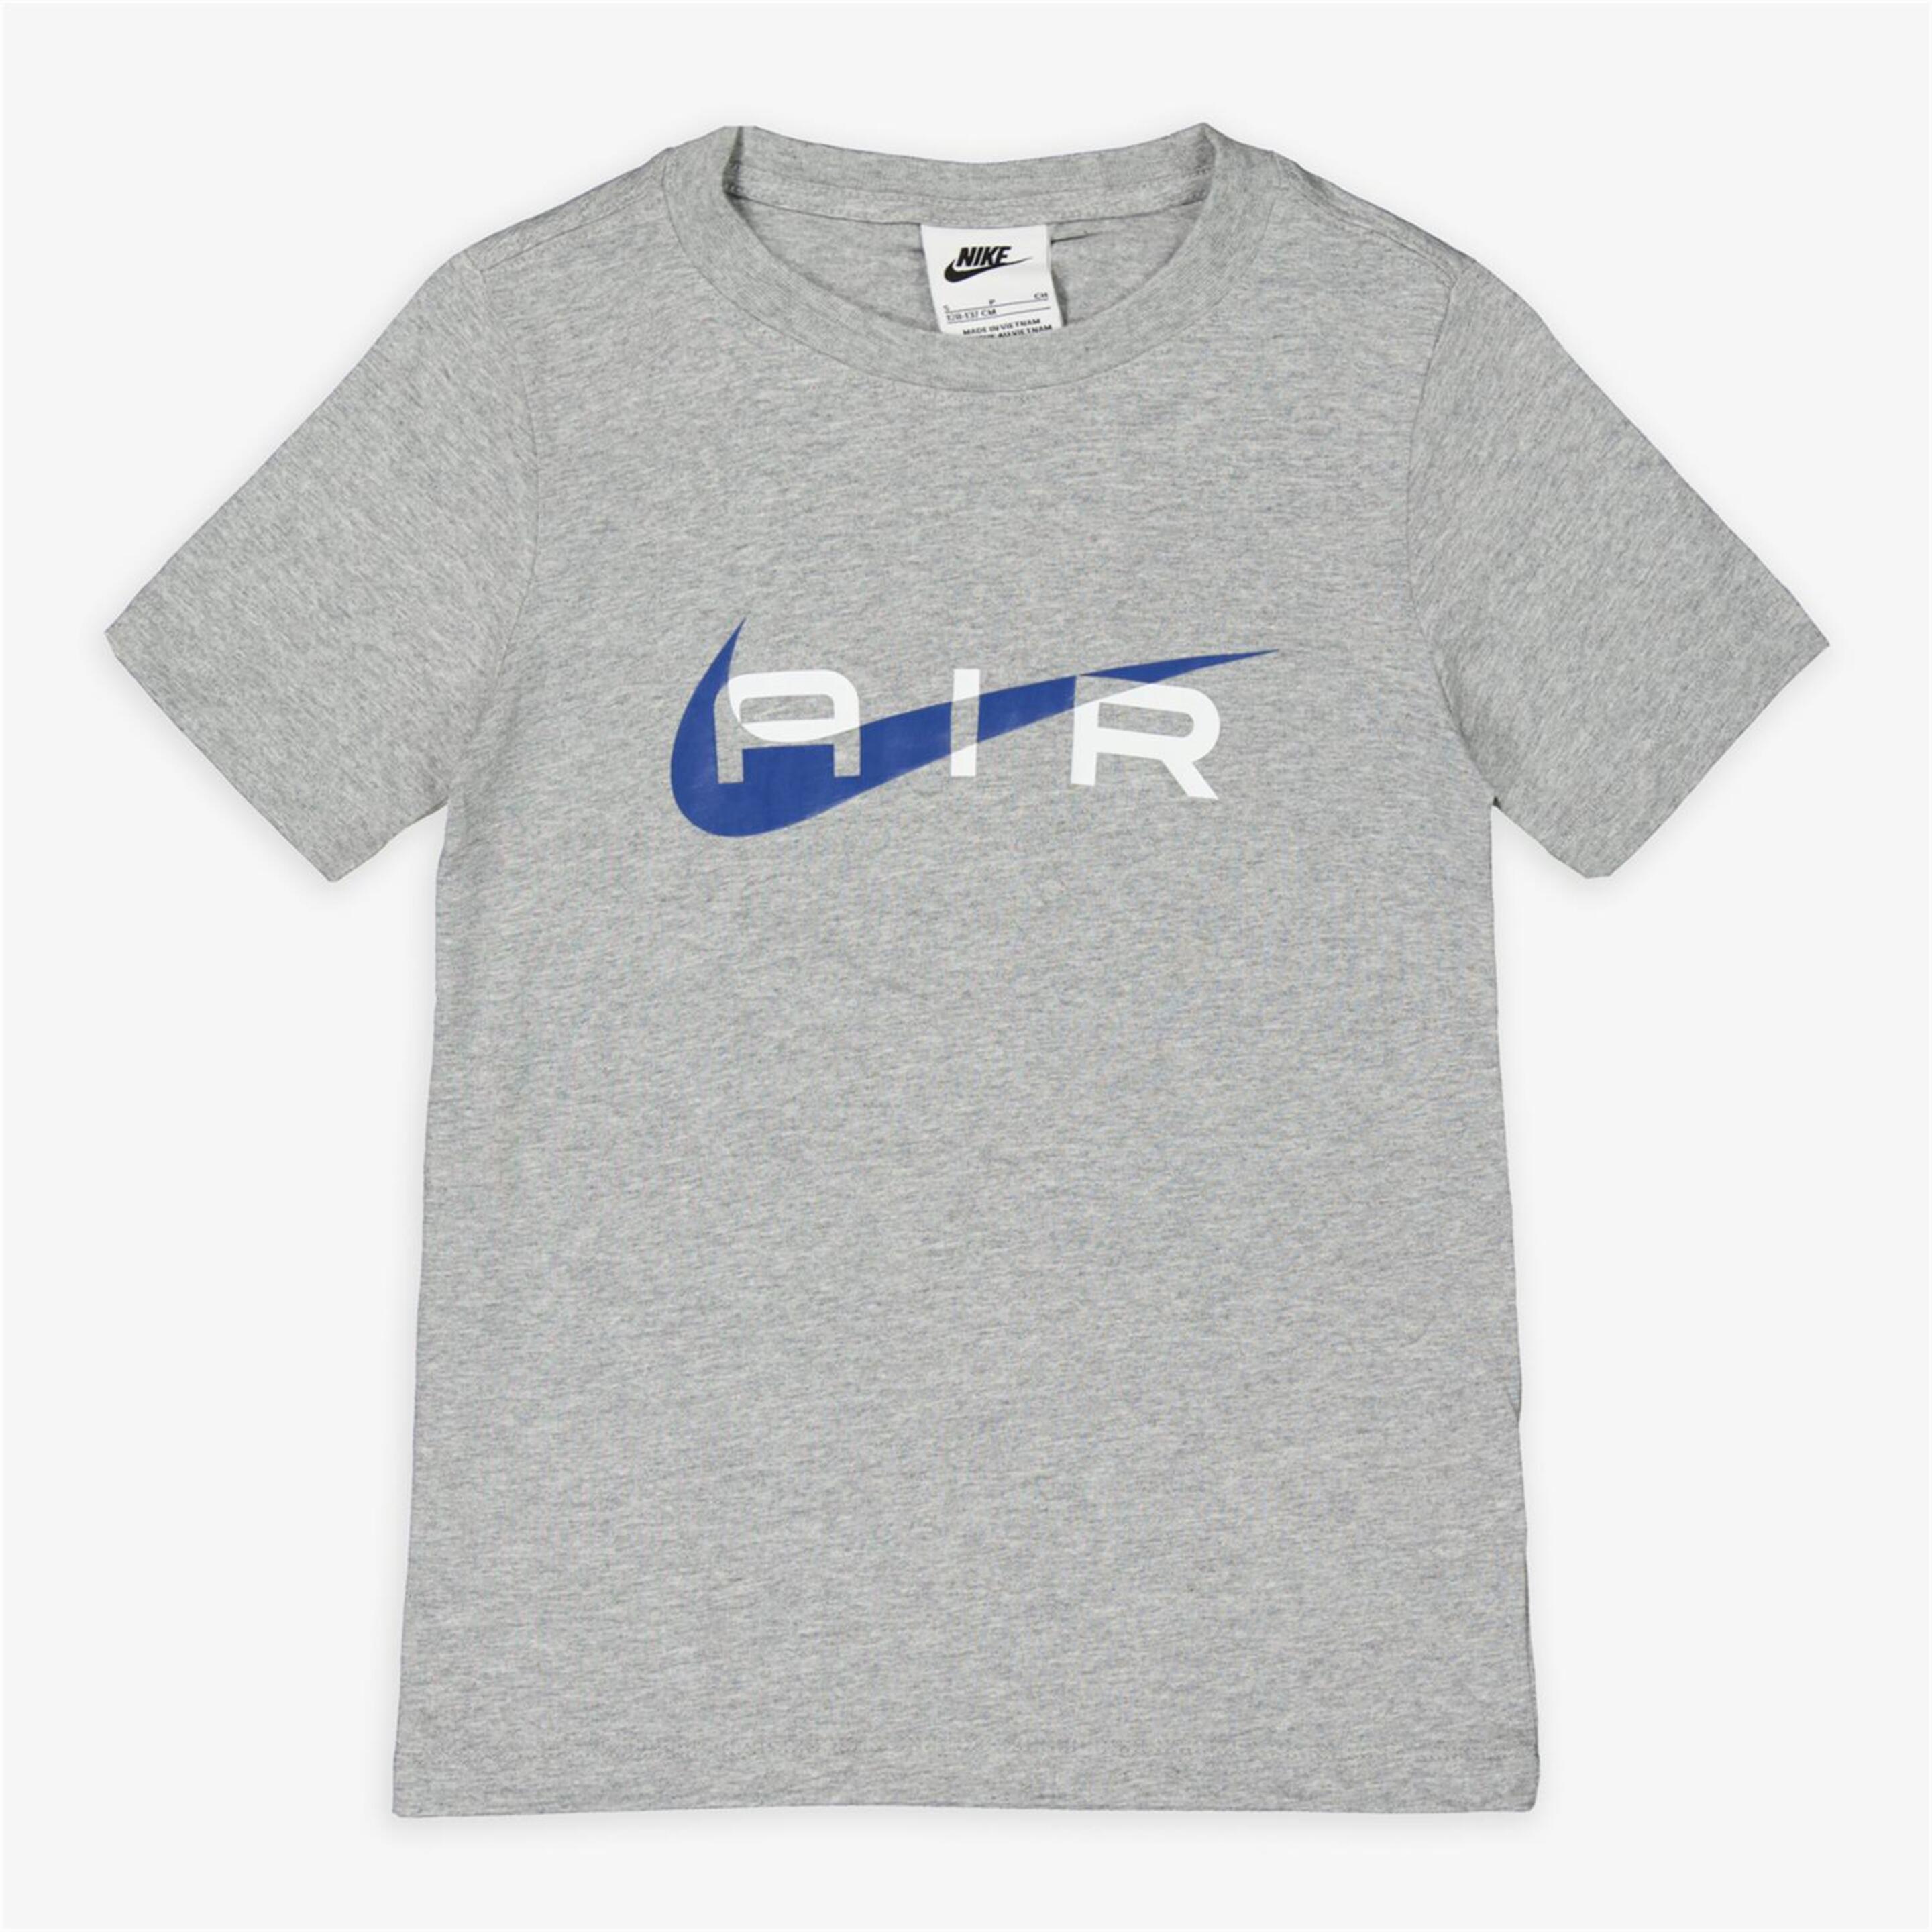 Camiseta Nike - gris - Camiseta Niño